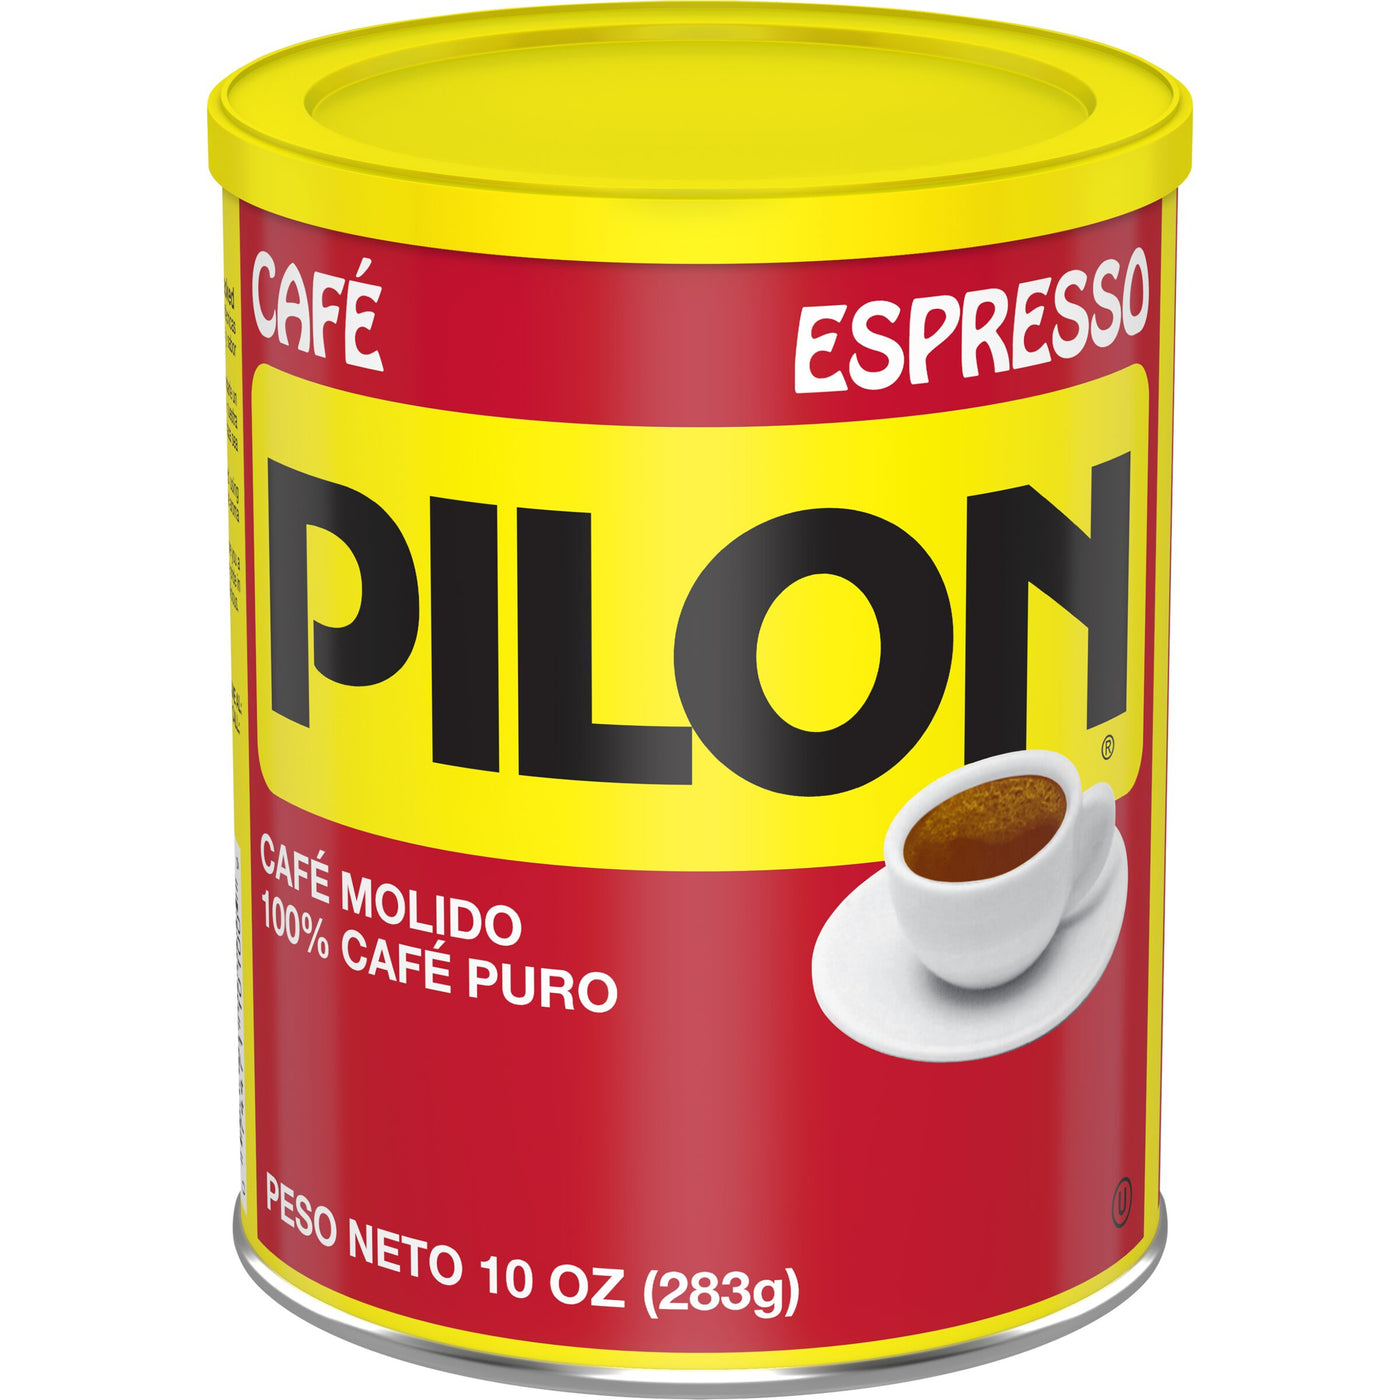 Cafe Pilon Espresso, Ground Coffee Can, 10 oz